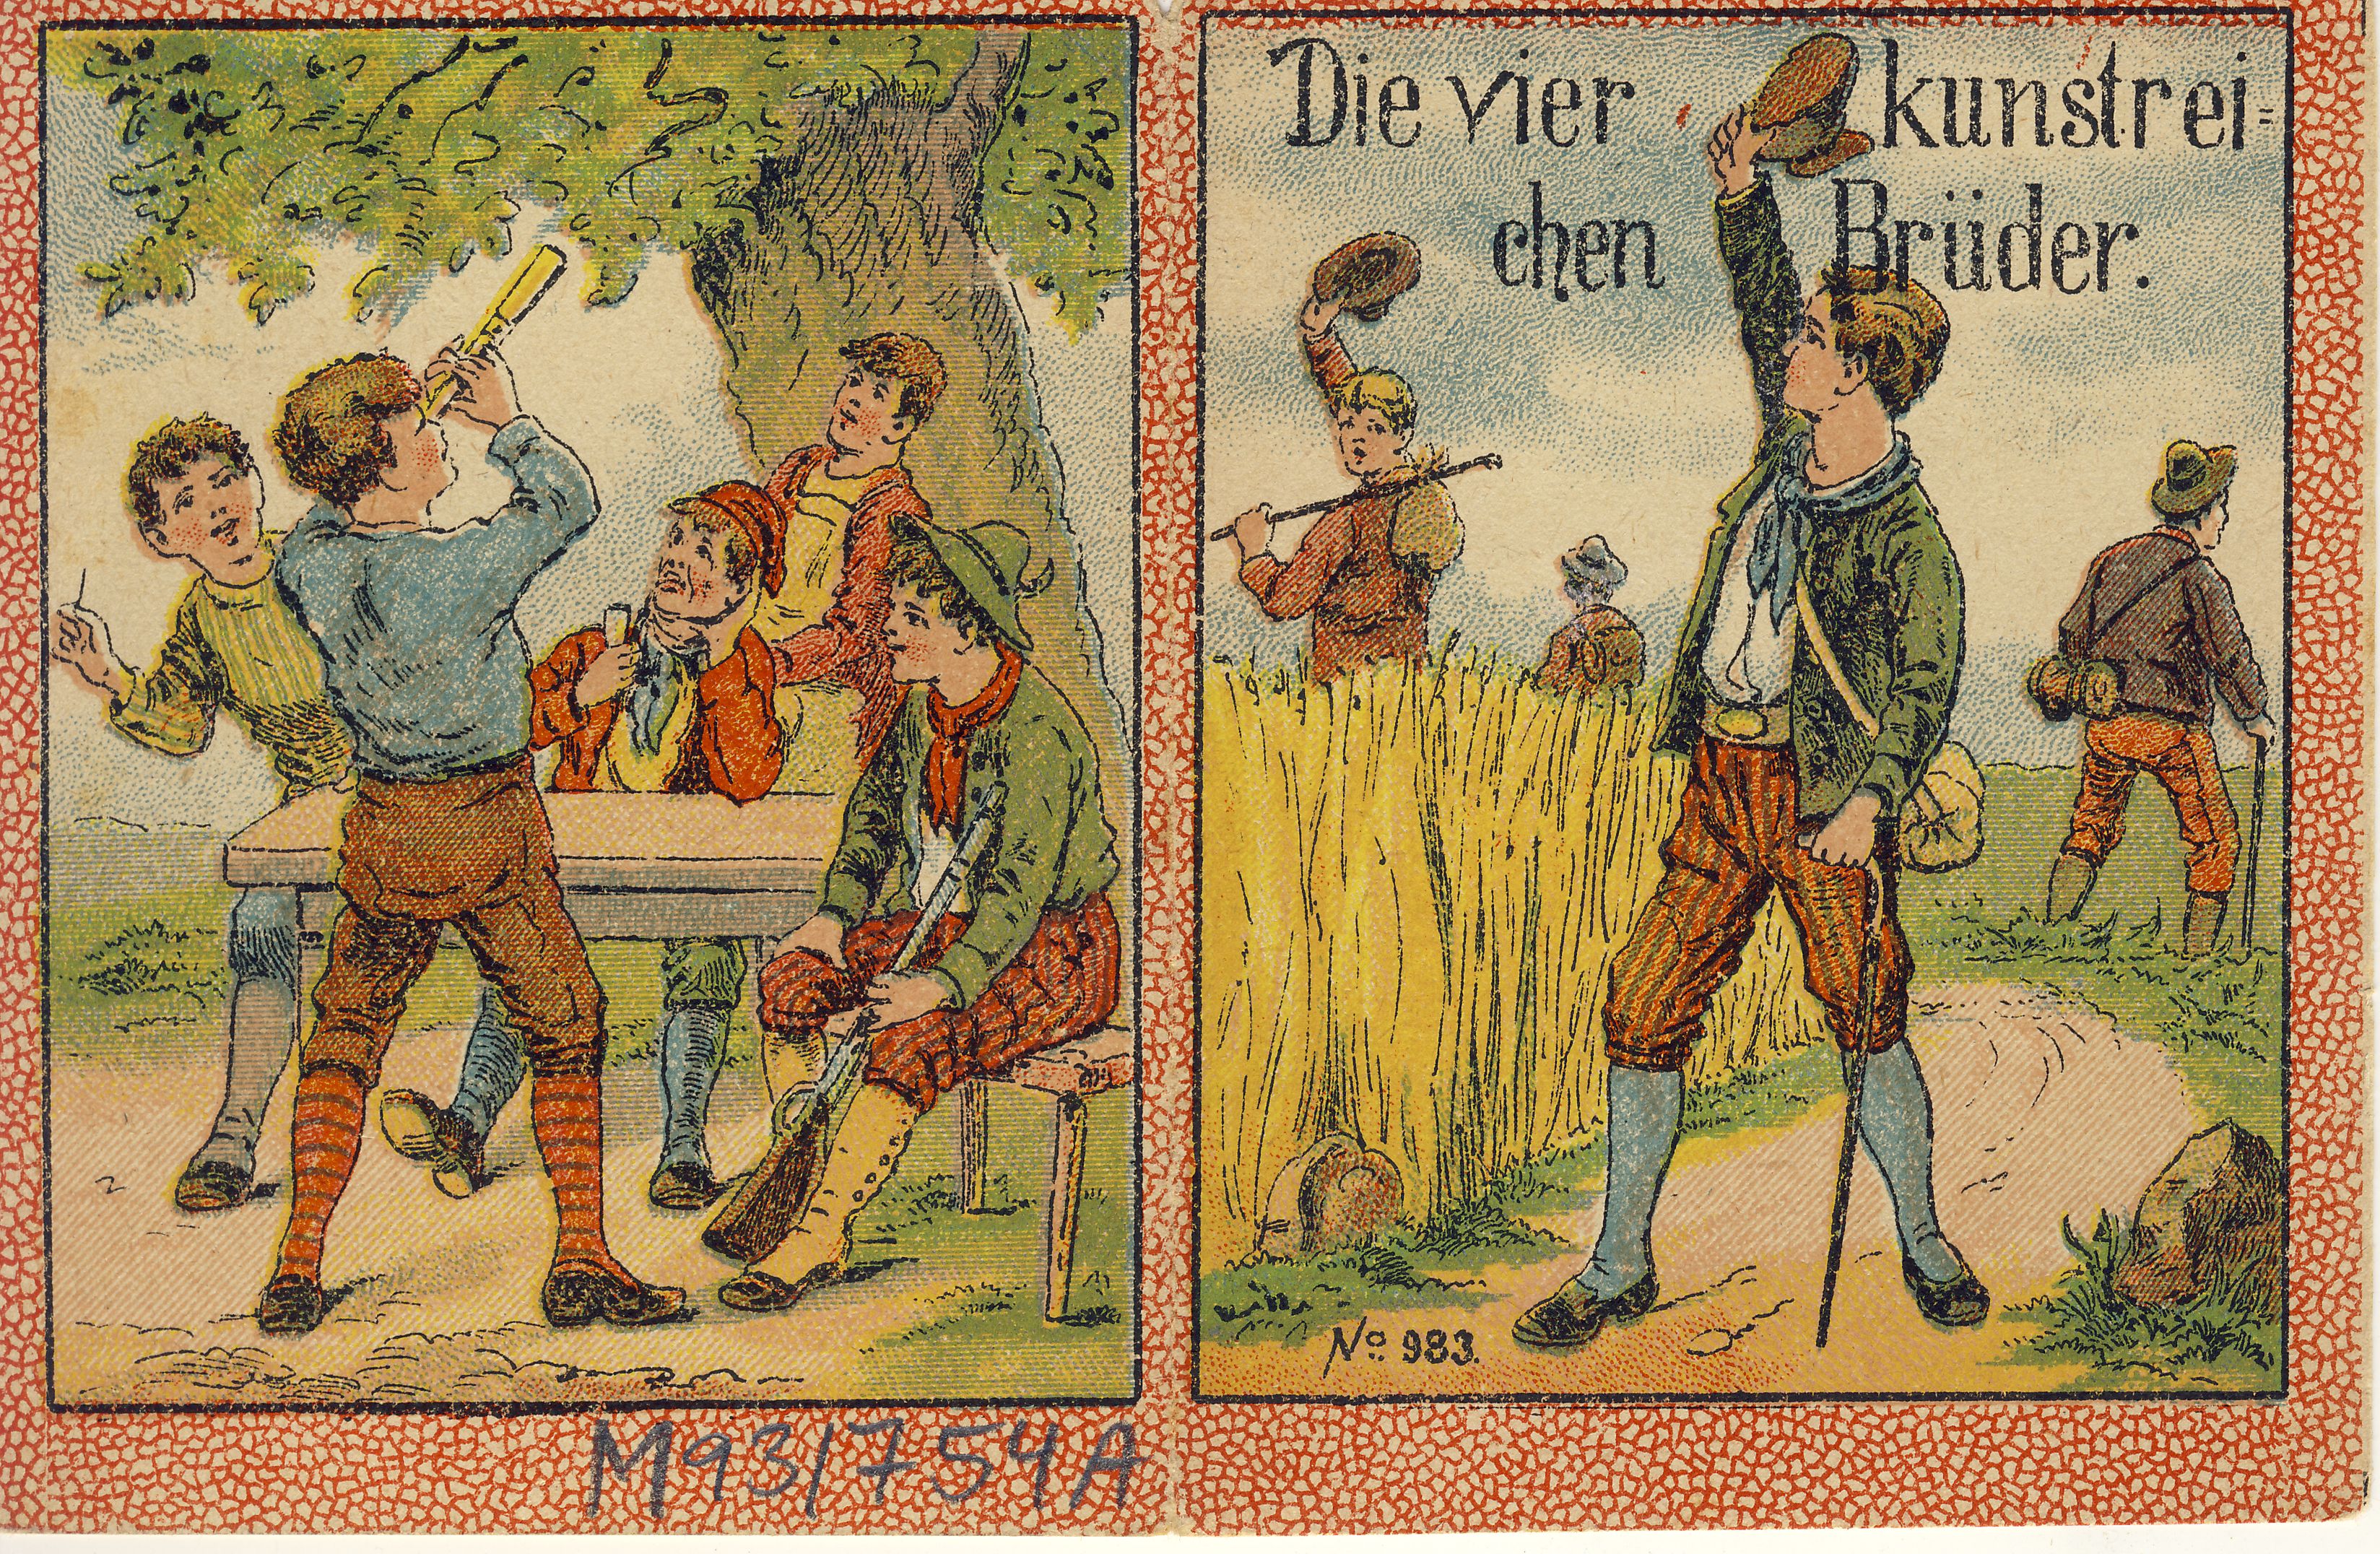 Die vier kunstreichen Brüder Märchensammelheft (Deutsches Märchen- und Wesersagenmuseum CC BY-NC-SA)